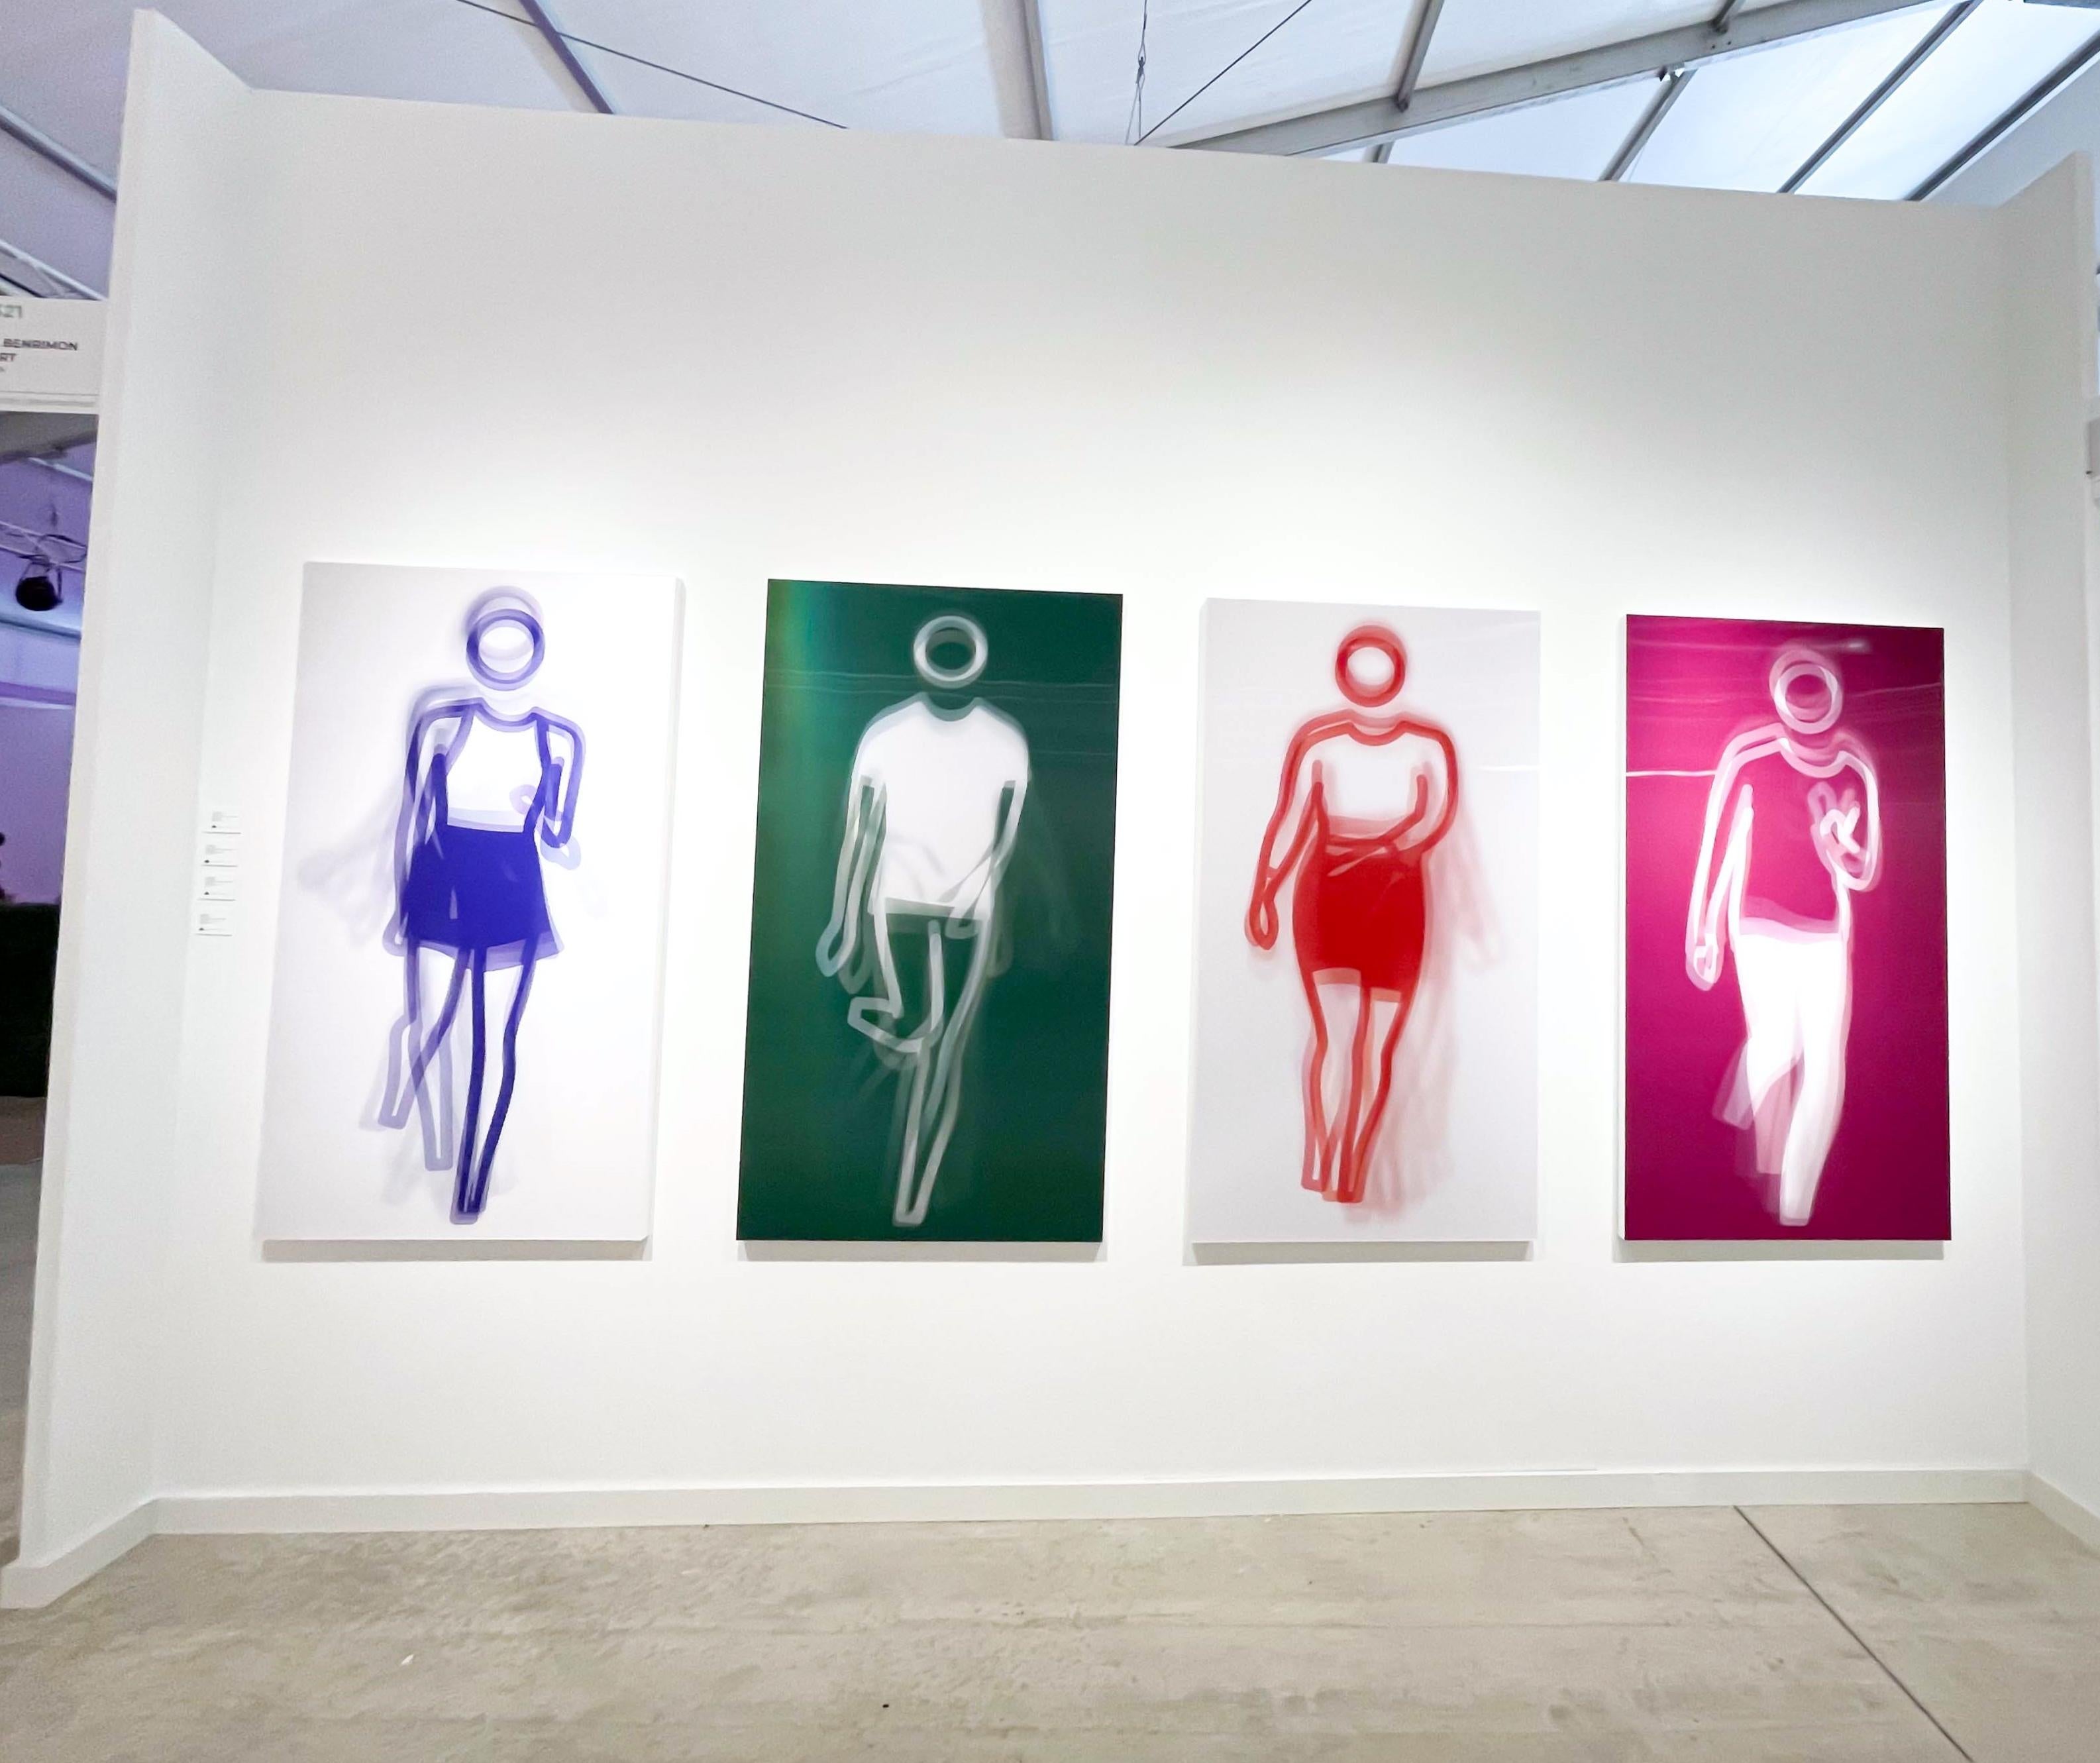 Moving Large Contemporary Acrylic Panel of Dancing Figure, Four Colors, Dance 3 (panneau acrylique contemporain de grande taille représentant une figure dansante) - Pop Art Print par Julian Opie